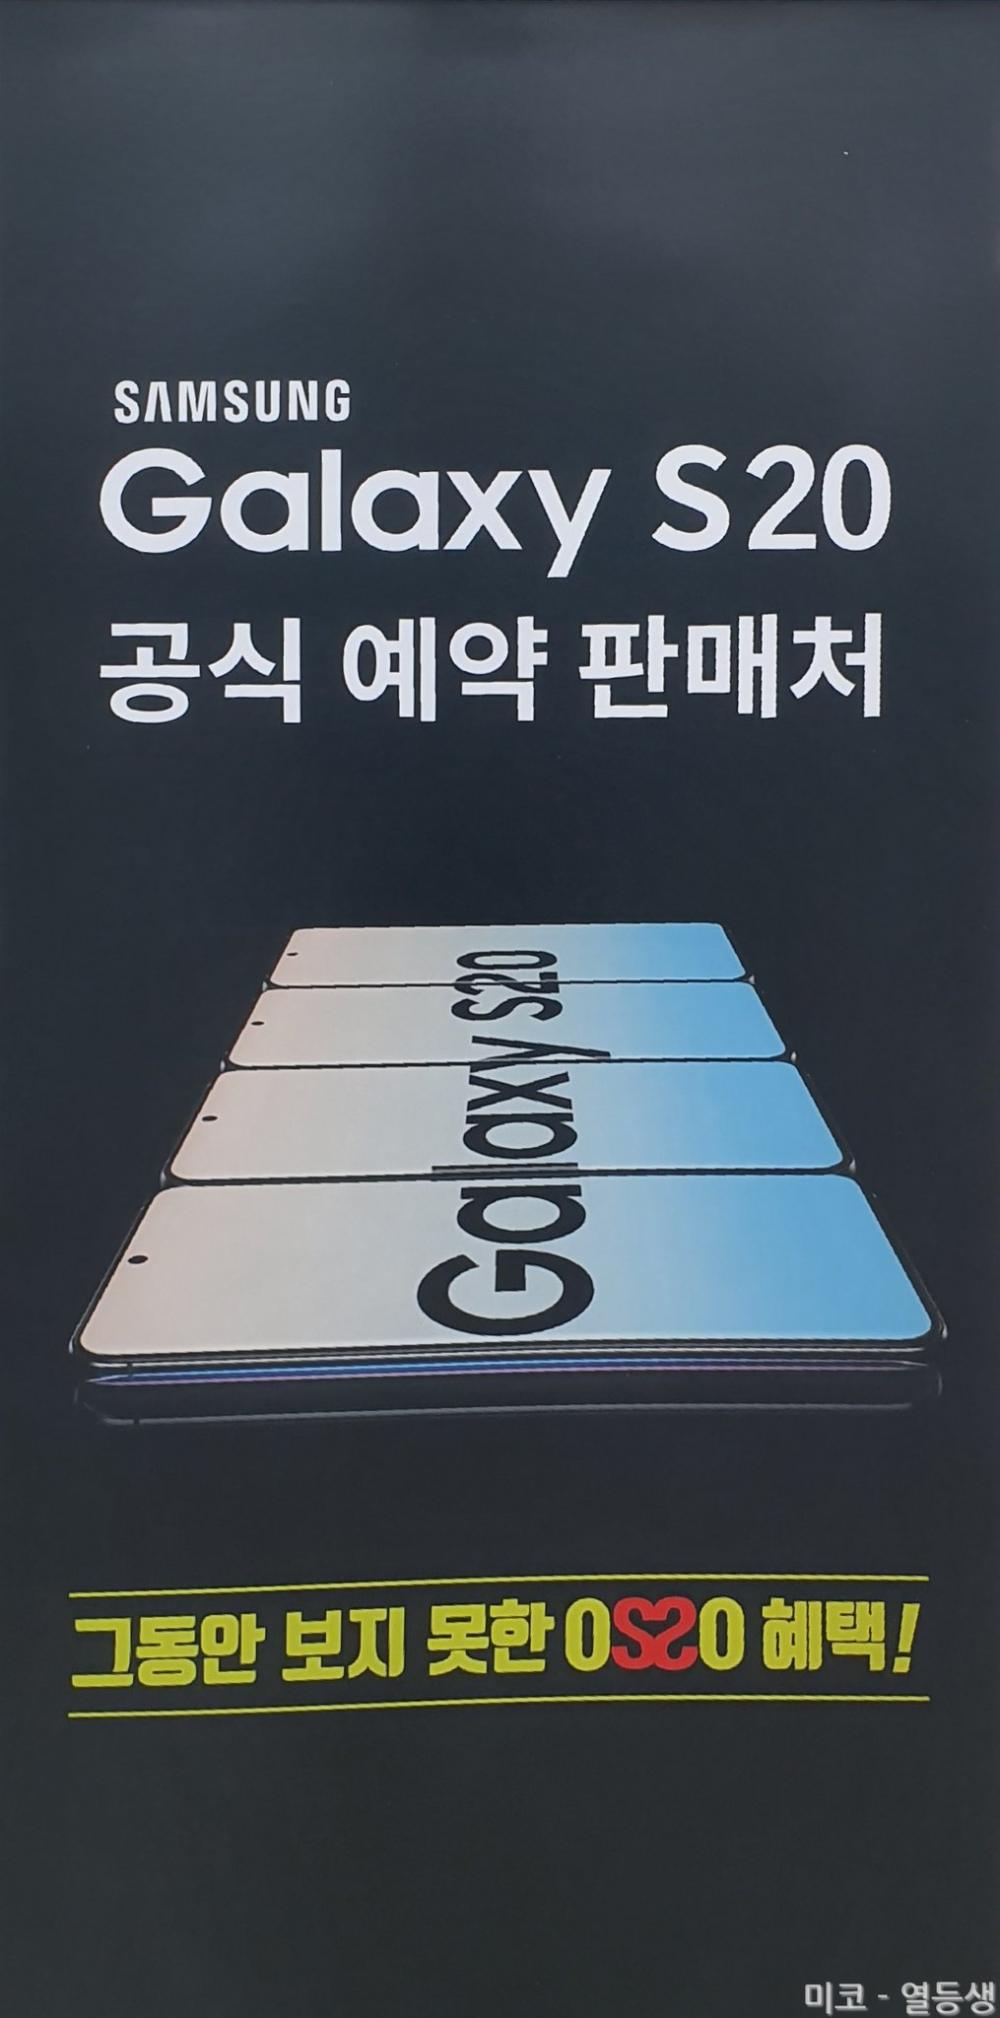 Samsung Galaxy S20, Samsung Galaxy S20: Μαζικό leak αποκαλύπτει ονόματα, εκδόσεις και χαρακτηριστικά